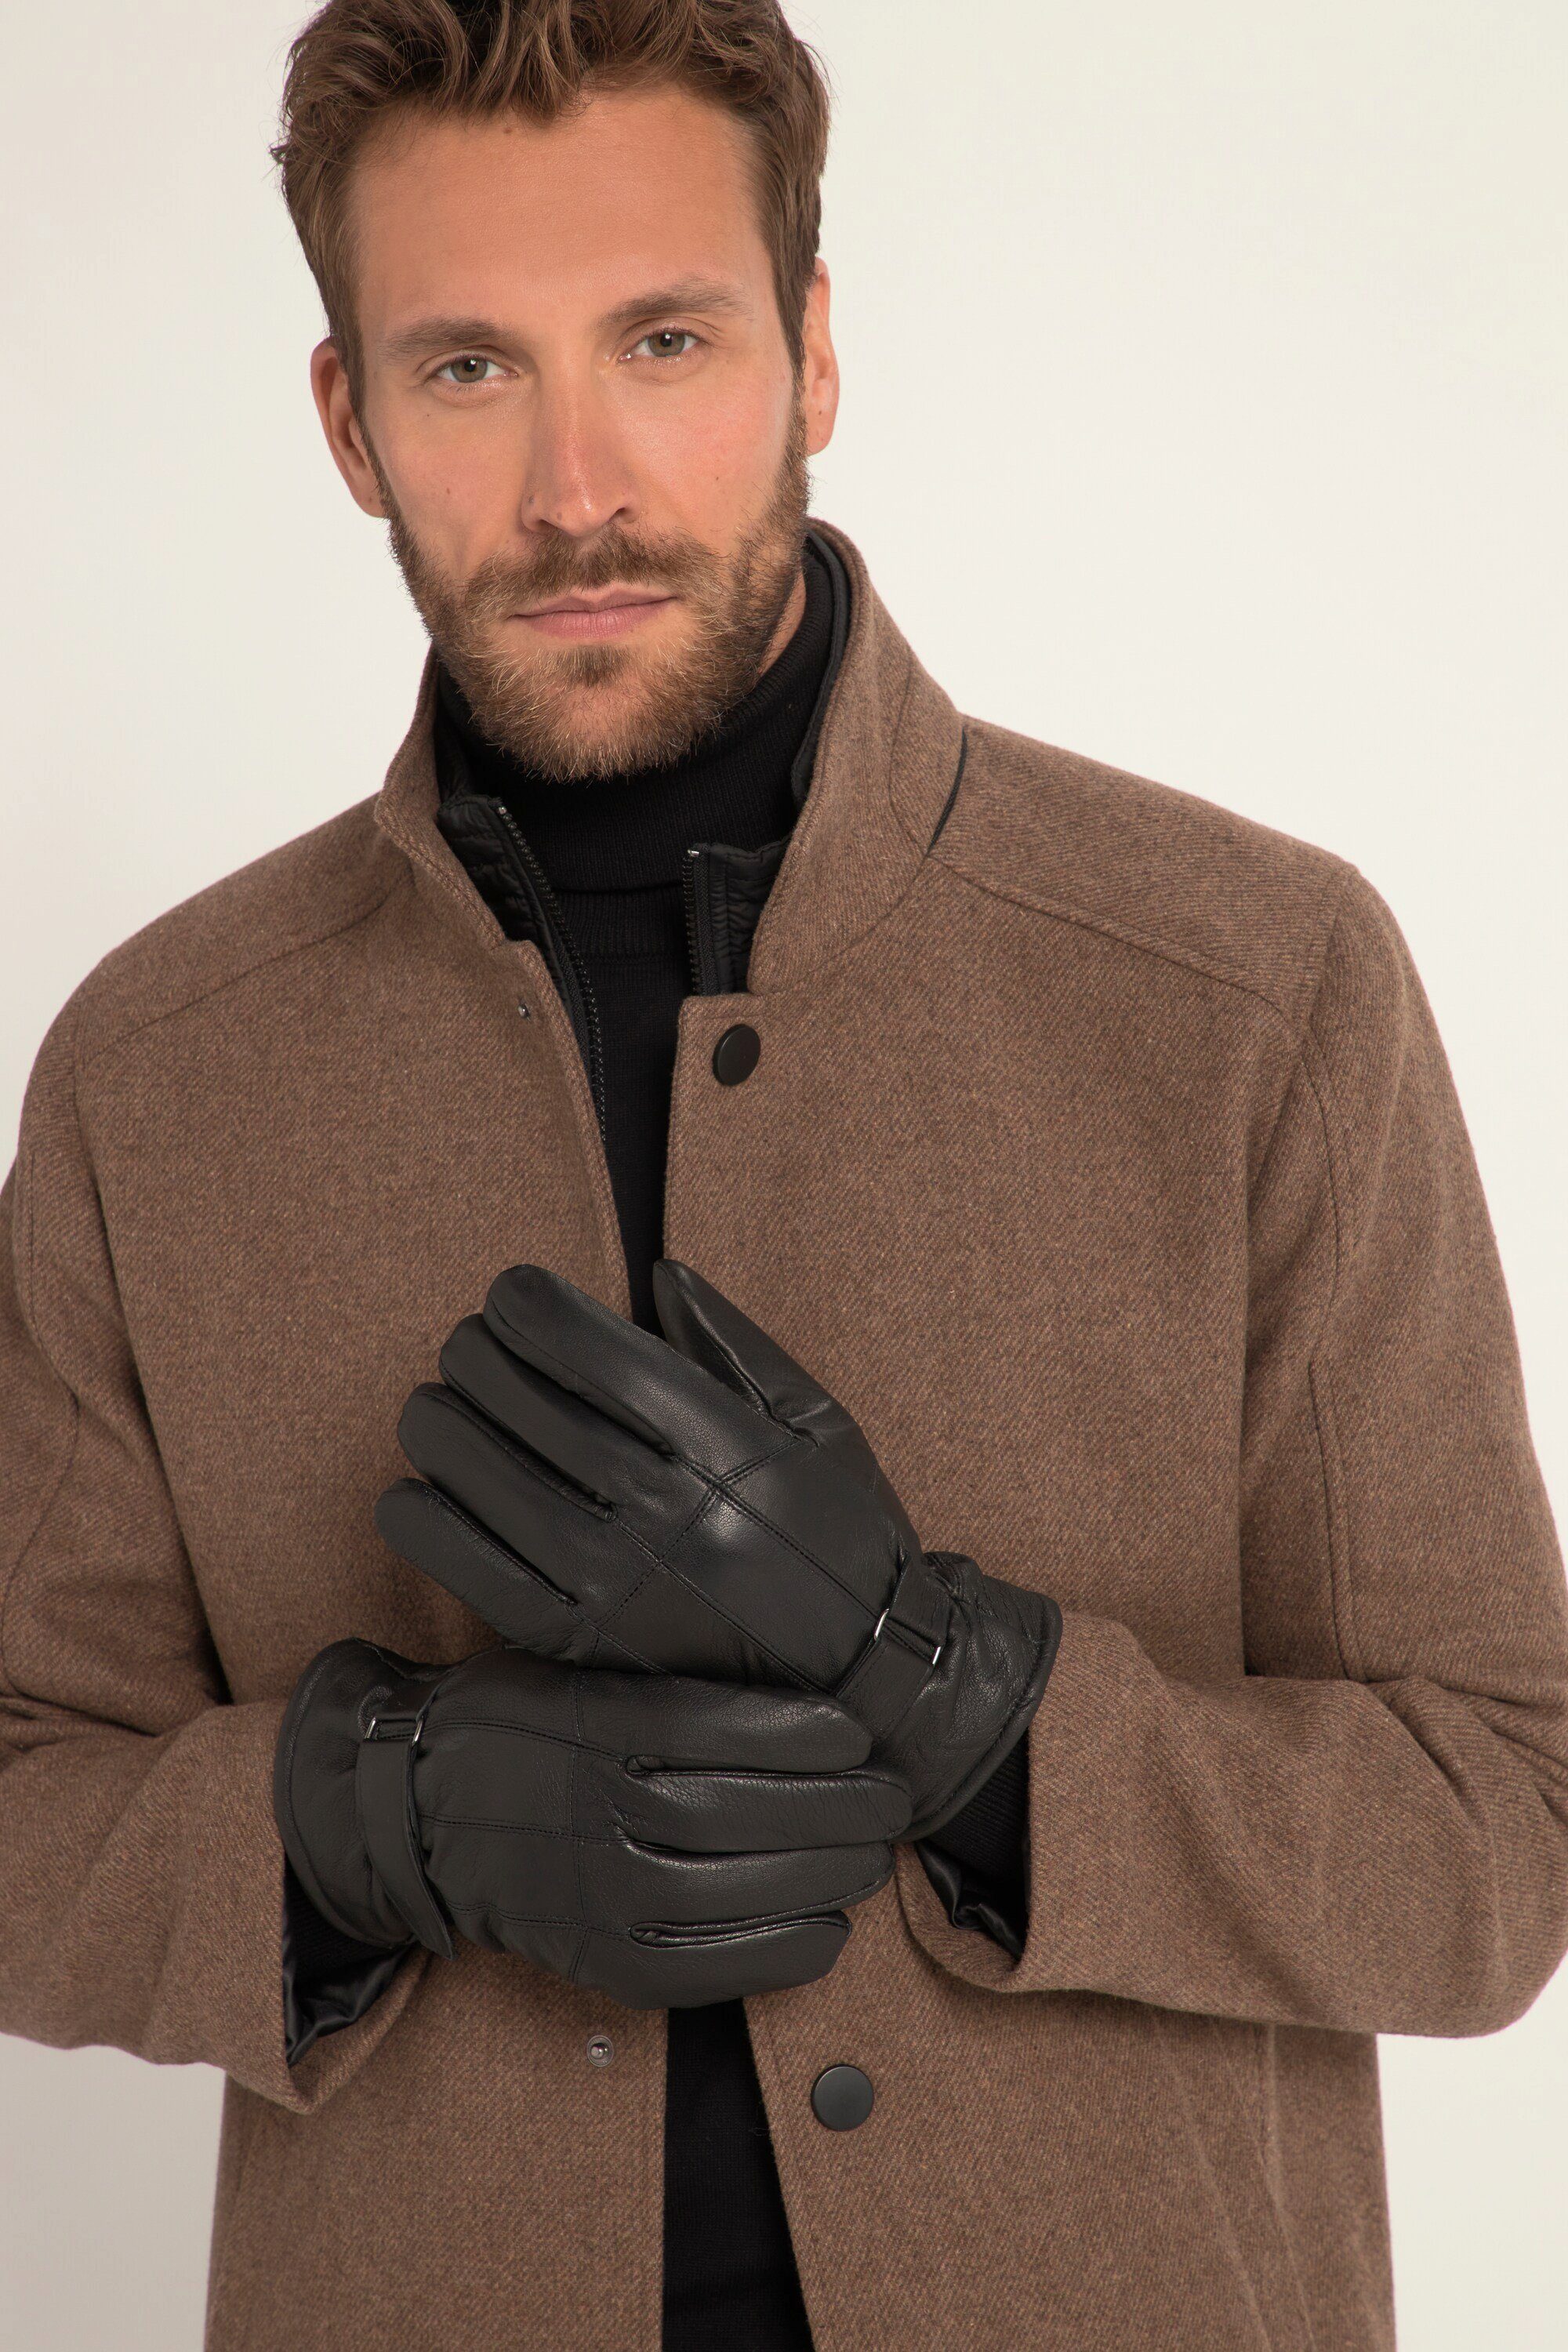 JP1880 Leder-Handschuhe Riegel Warmfutter Strickhandschuhe Echtleder